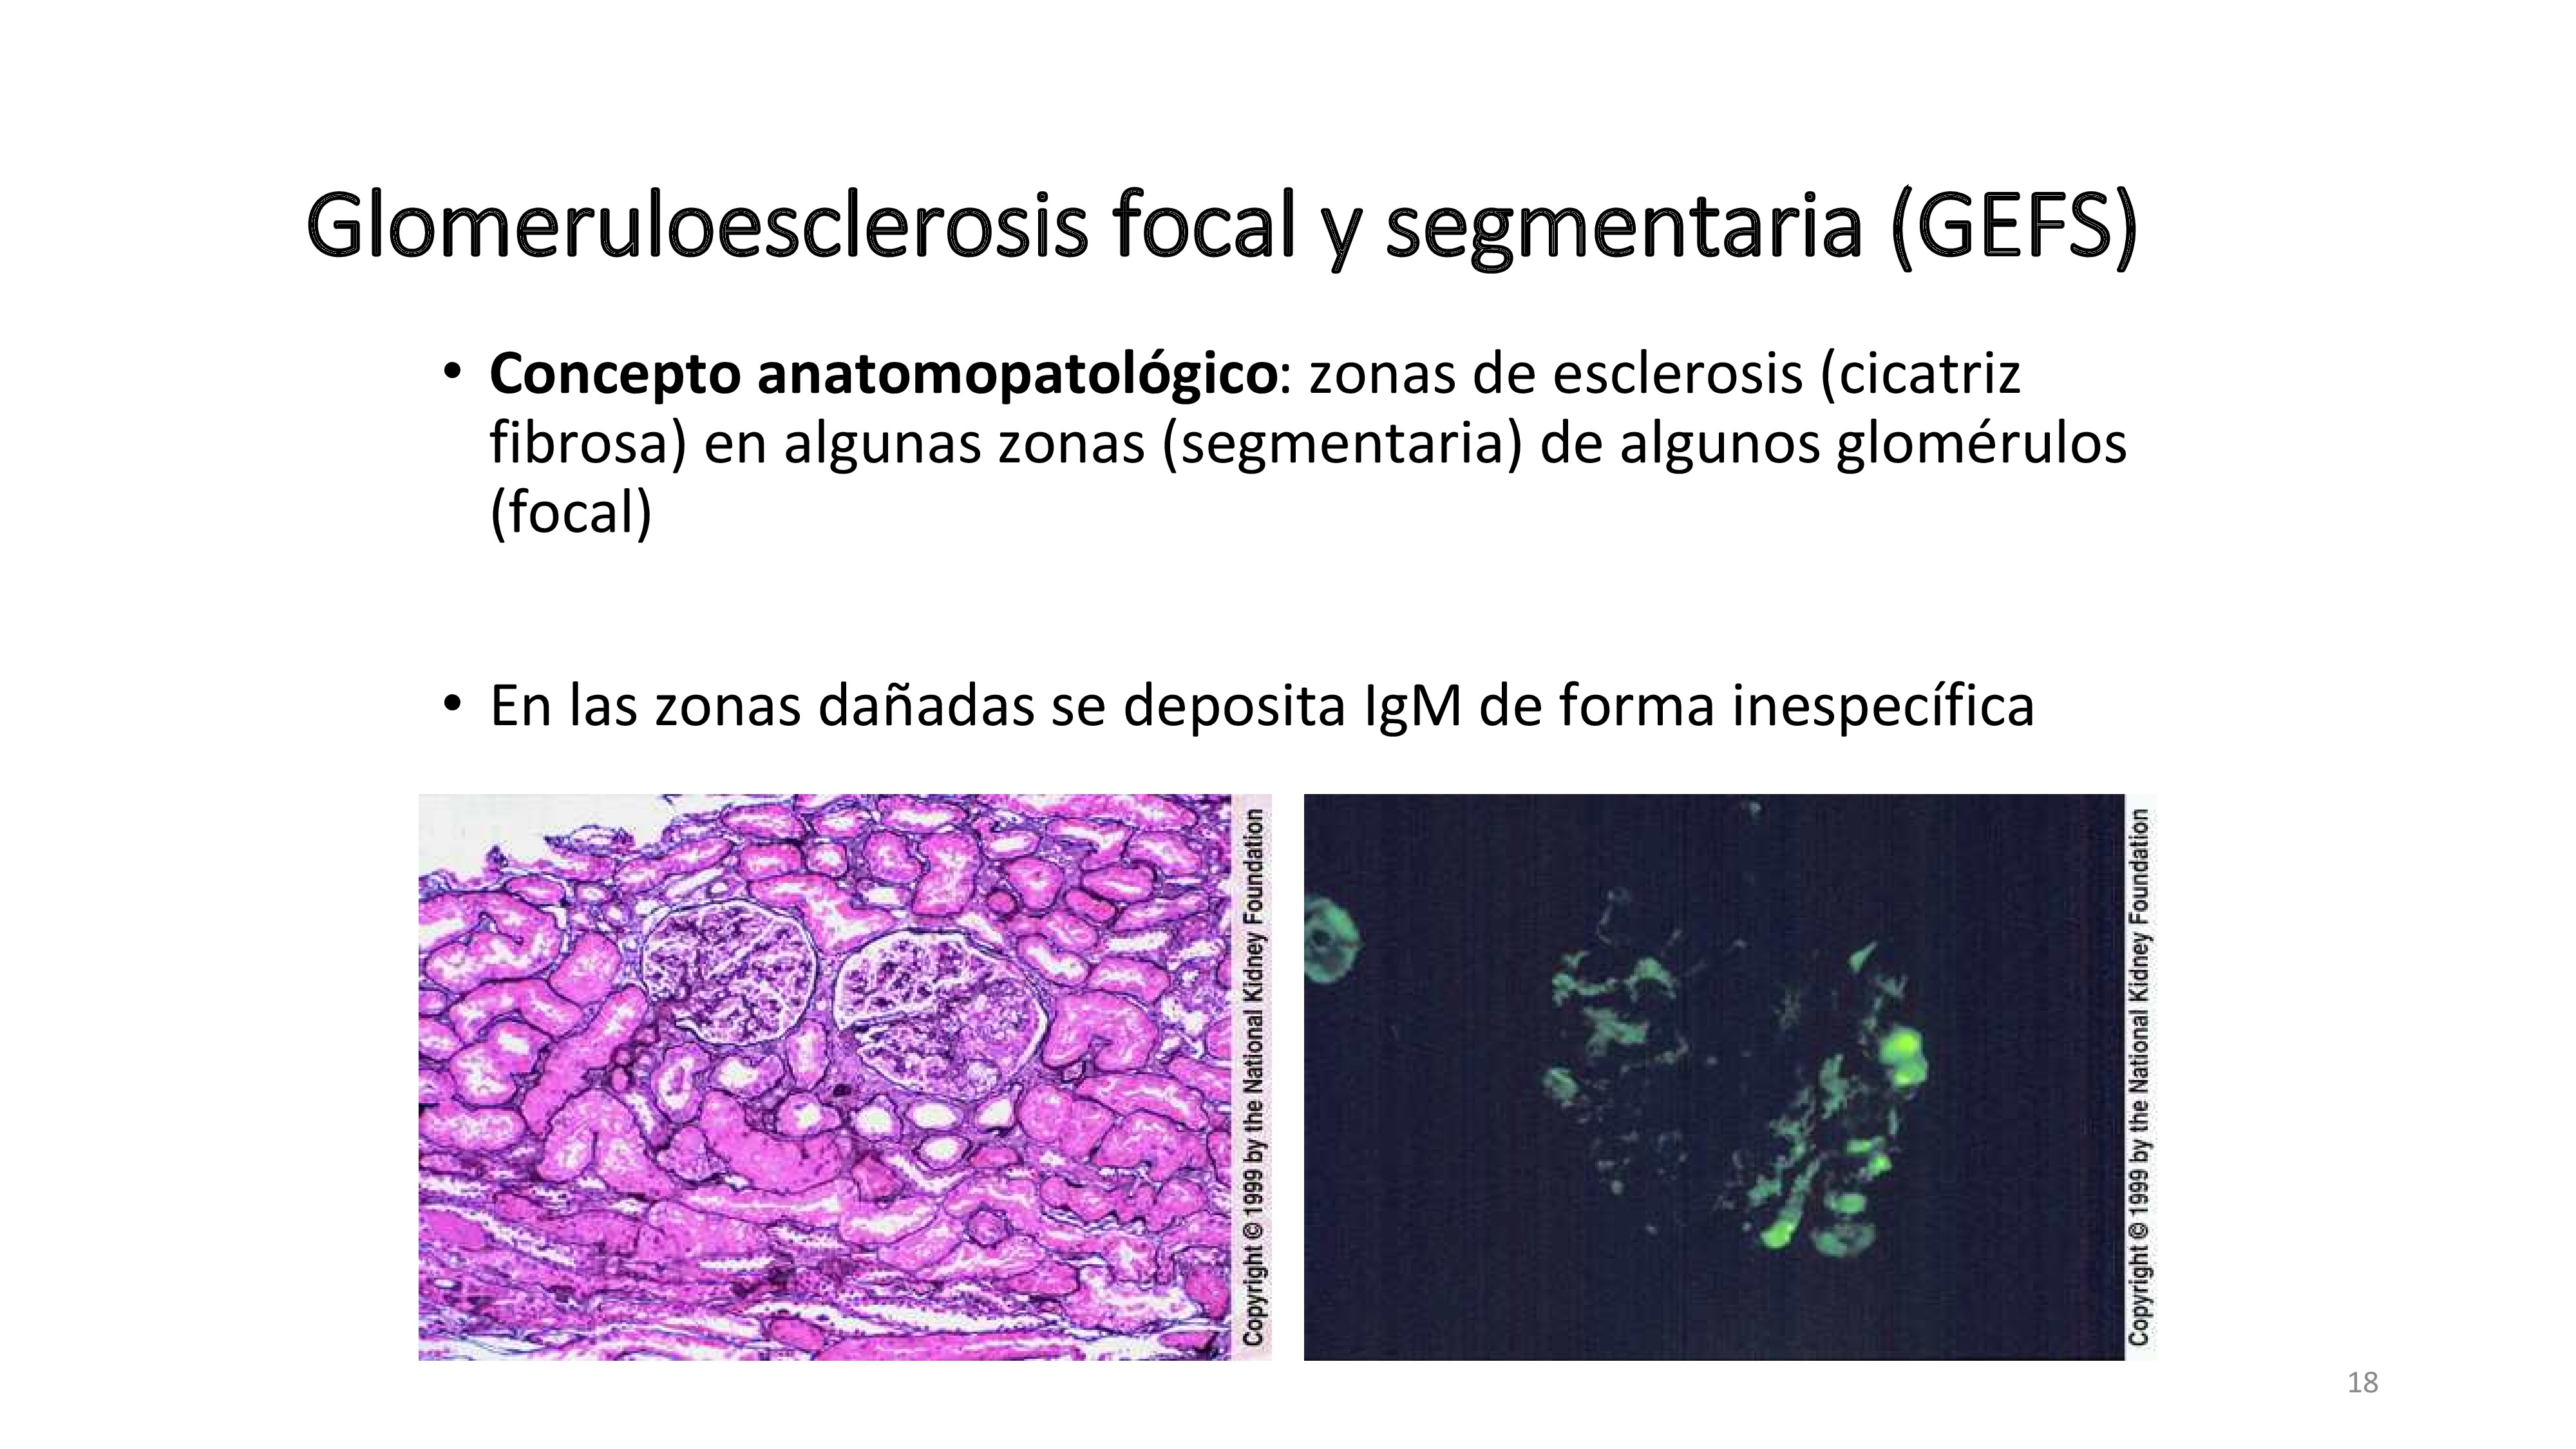 La anatomía patológica de la GMN focal y segmentaria se caracteriza por zonas de fibrosis en parte de algunos glomérulos muy característica. En esas zonas se deposita IgM que se ve en la inmunoflurescencia.